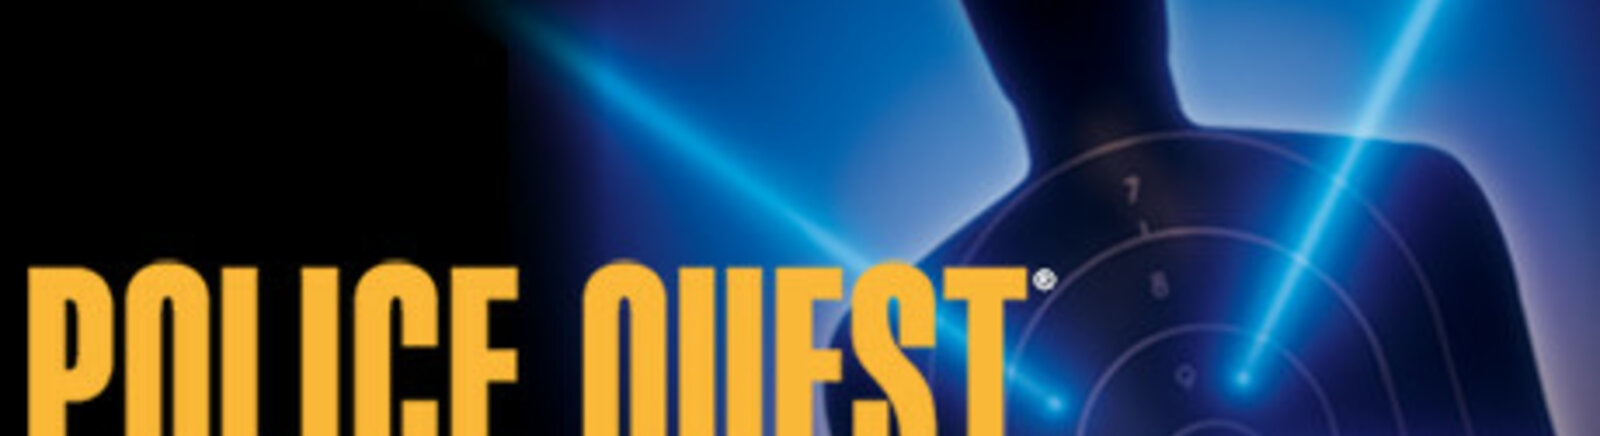 Дата выхода Police Quest Collection (Police Quest 1+2+3+4)  на PC в России и во всем мире